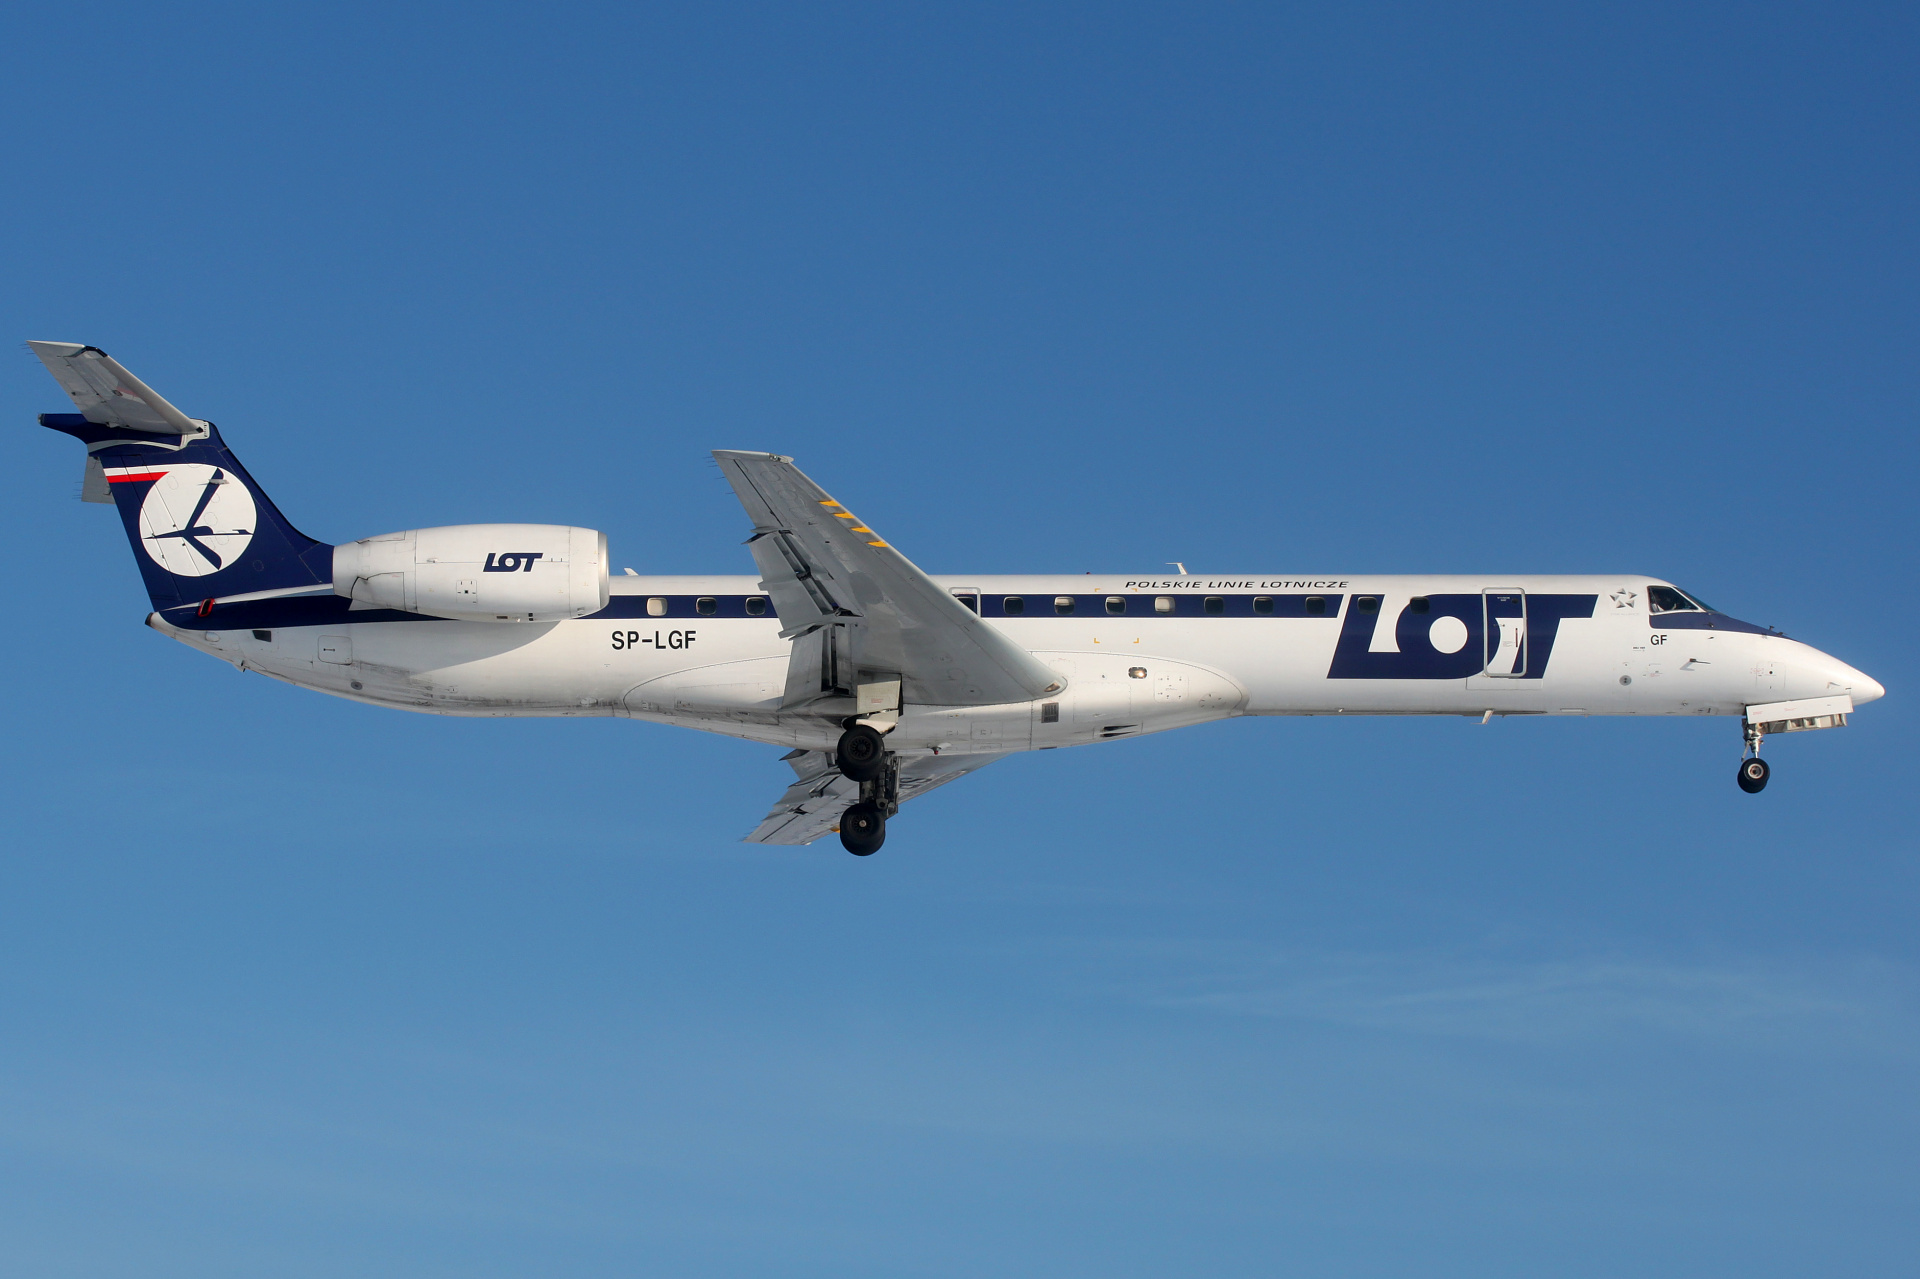 SP-LGF (Samoloty » Spotting na EPWA » Embraer ERJ-145 » Polskie Linie Lotnicze LOT)